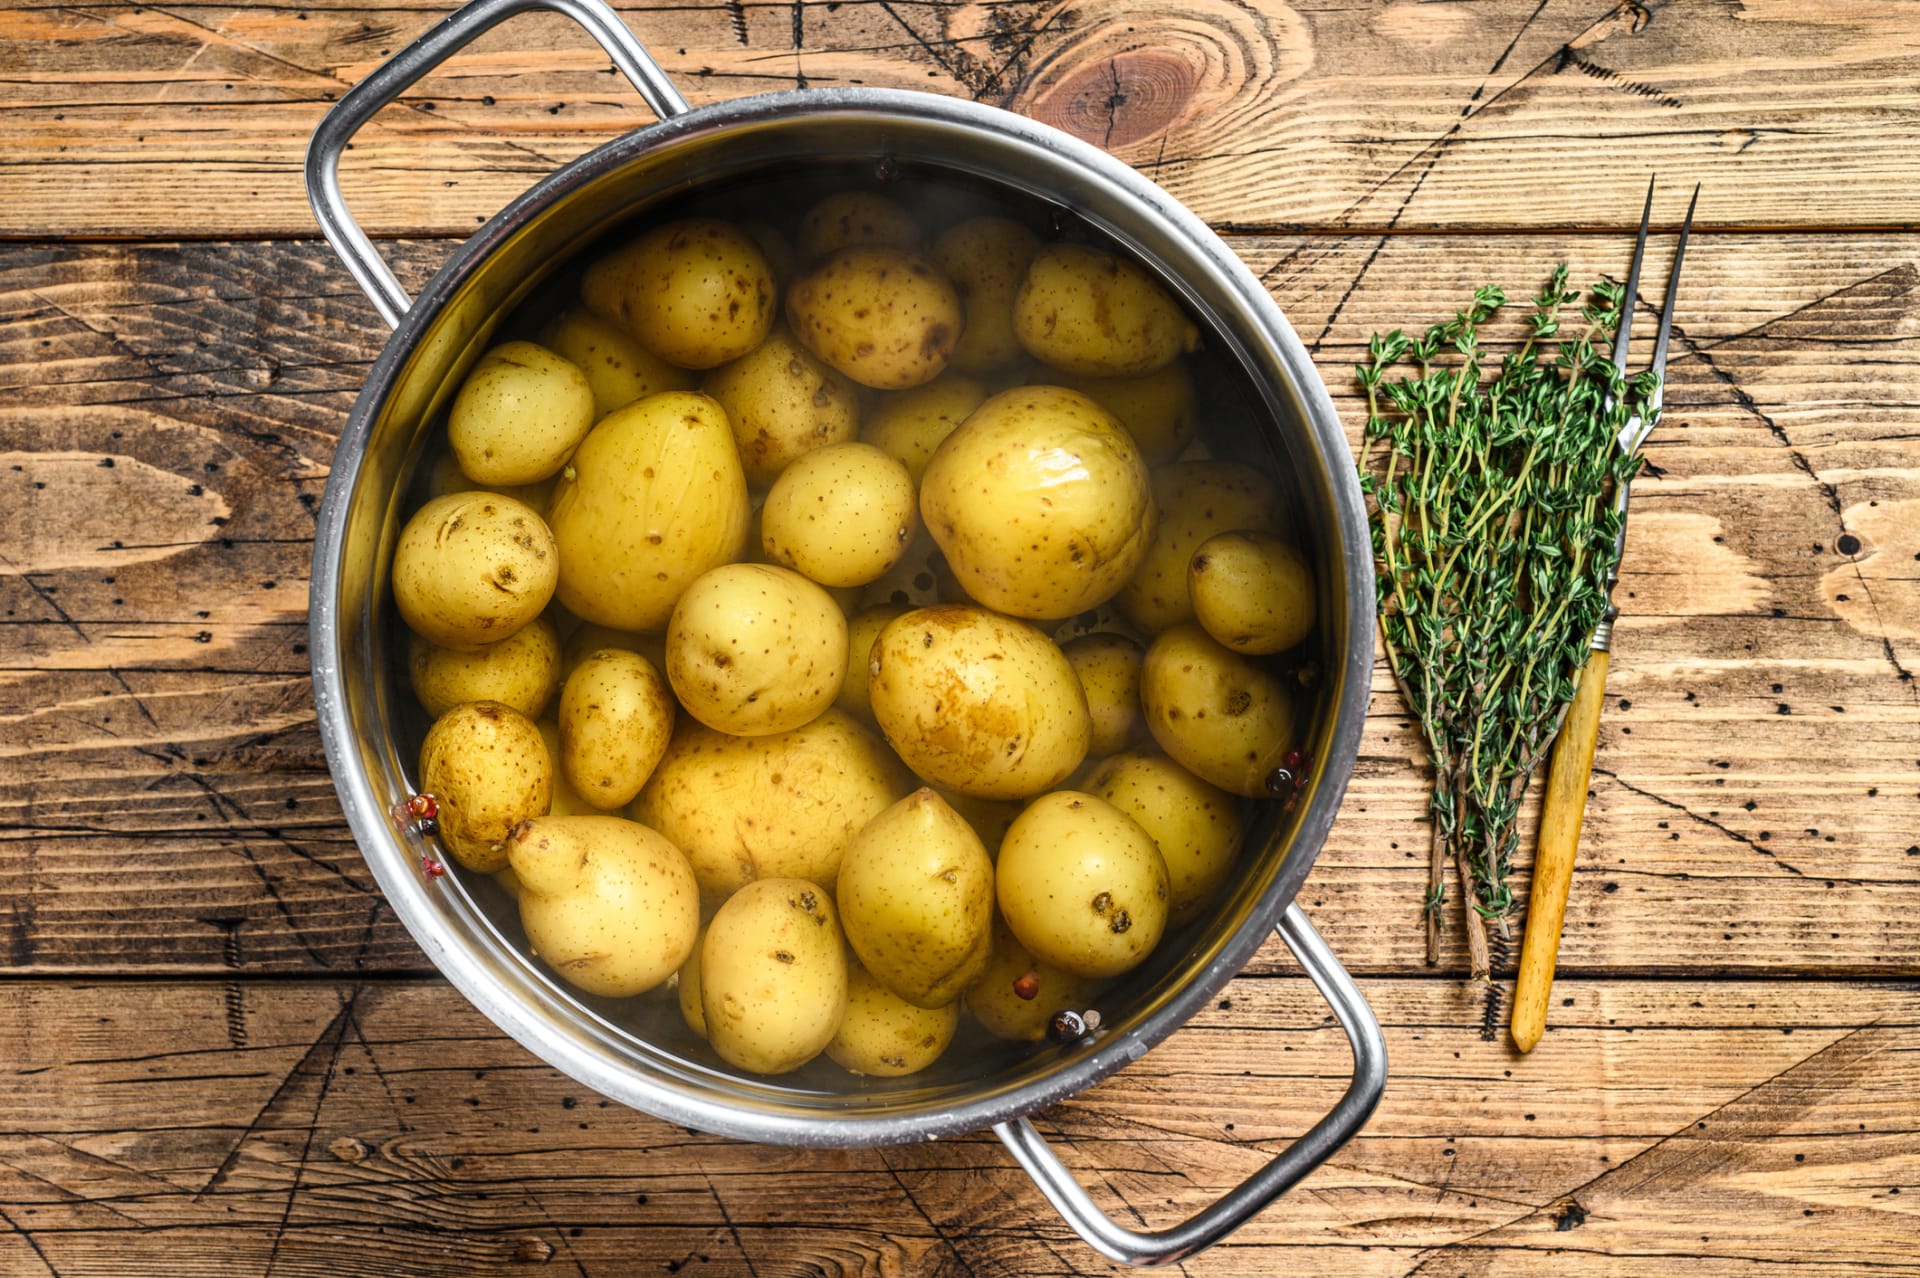 Prozradíme vám všechny kuchařské triky, jak správně uvařit brambory